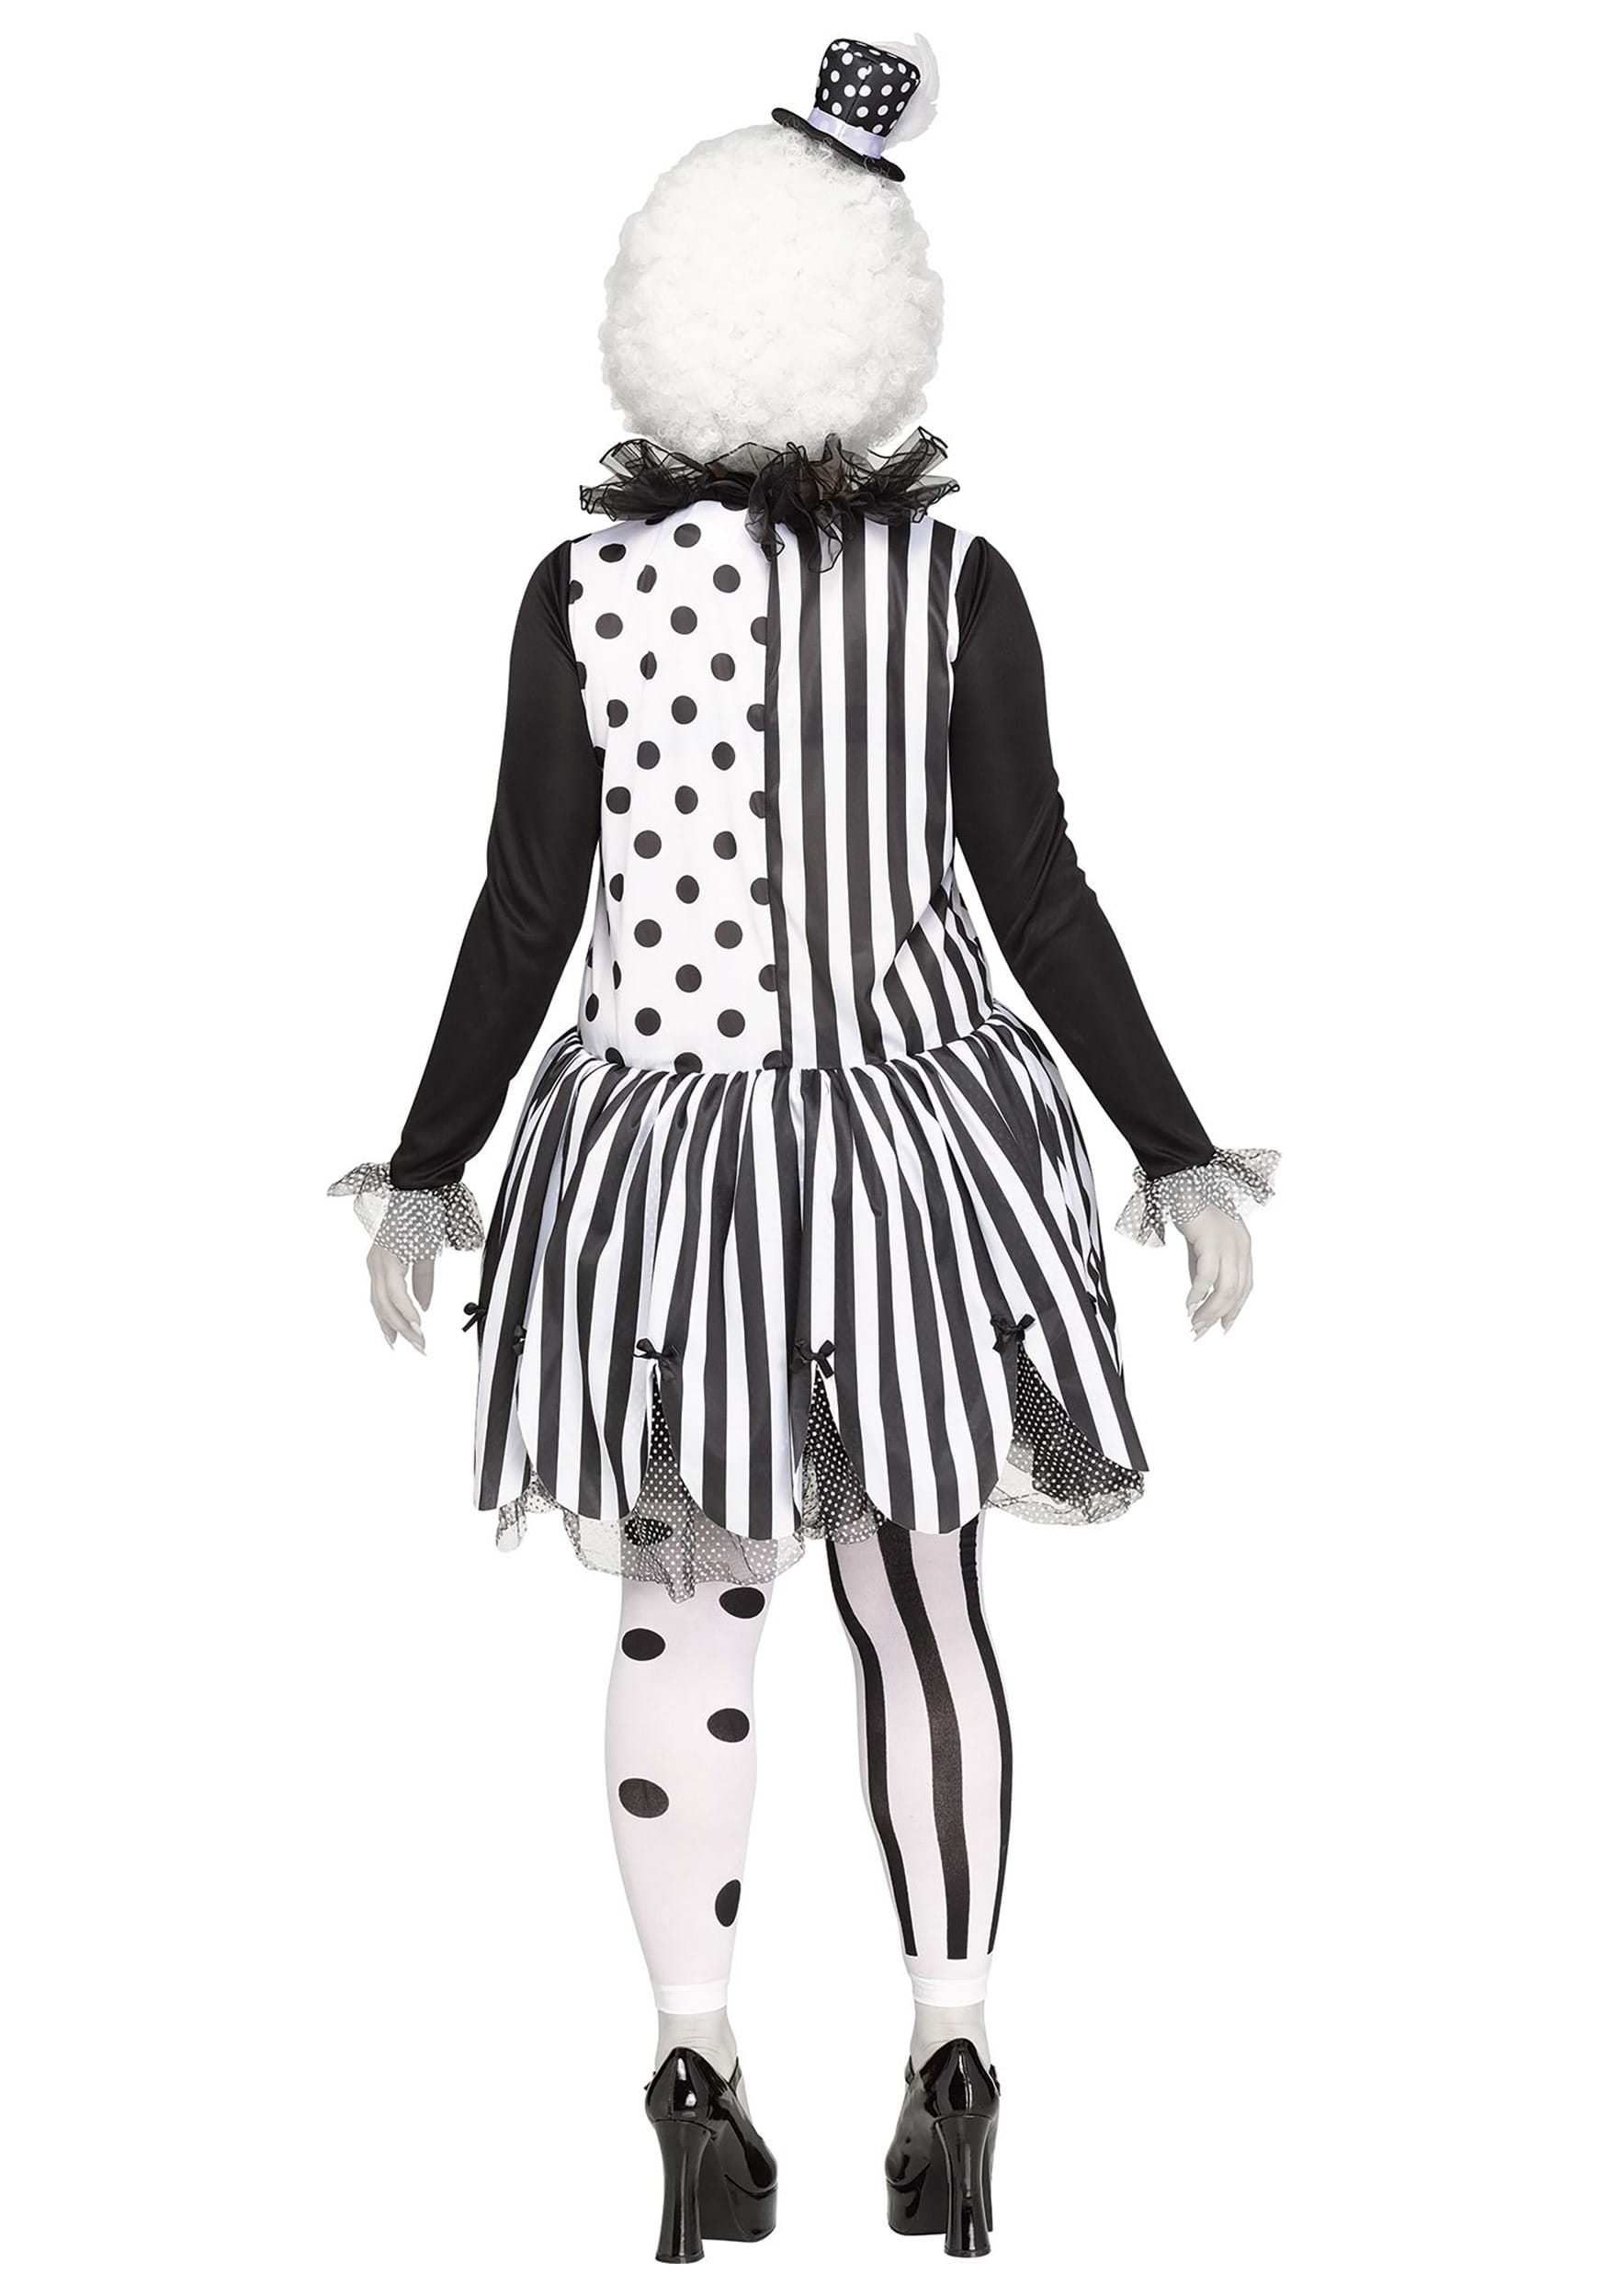 Plus Size Killer Clown Fancy Dress Costume For Women